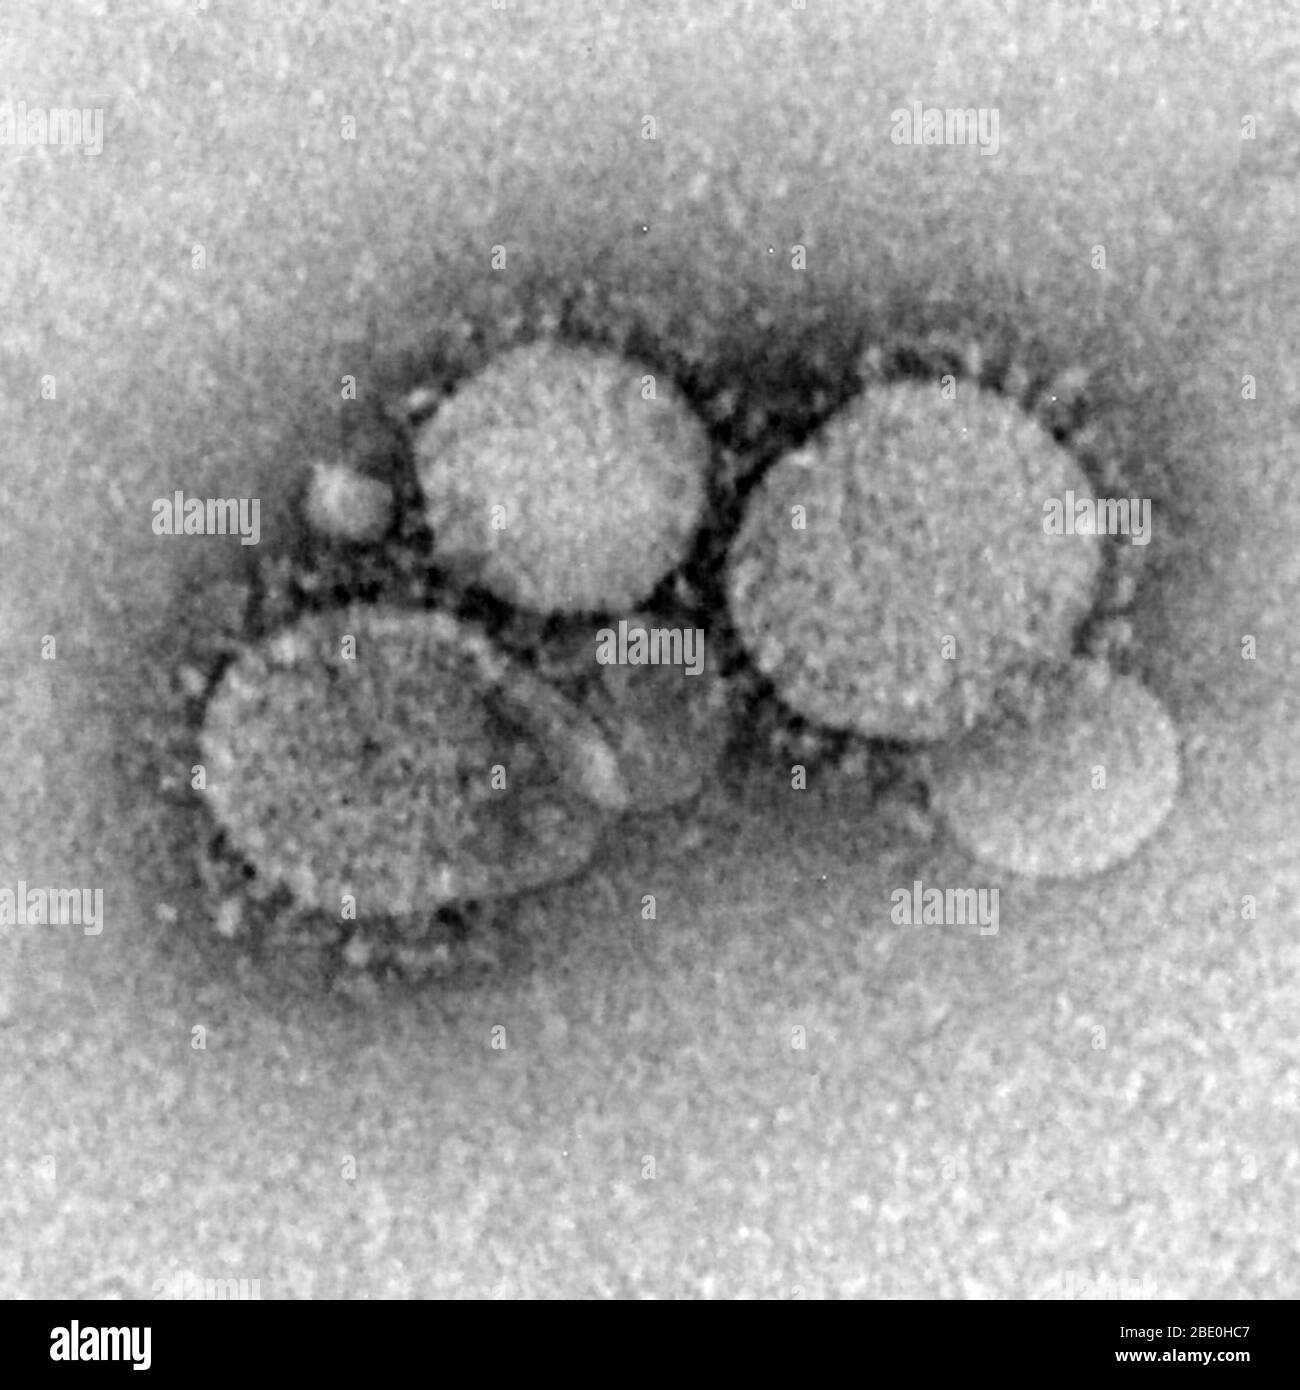 Micrografia elettronica a trasmissione a colorazione negativa (TEM) della sindrome respiratoria mediorientale coronavirus (MERS-cov), che è un nuovo coronavirus (nCoV) riportato per la prima volta il 24 settembre 2012 dal virologo egiziano Dr. Ali Mohamed Zaki a Jeddah, Arabia Saudita. Ha isolato e identificato un coronavirus precedentemente sconosciuto dai polmoni di un paziente maschio di 60 anni con polmonite acuta e insufficienza renale acuta. MERS-cov è il sesto tipo di coronavirus come la SARS (ma ancora distinto da esso e dal coronavirus comune-freddo). I virioni contengono proiezioni simili a un club caratteristico che emanano dal Foto Stock